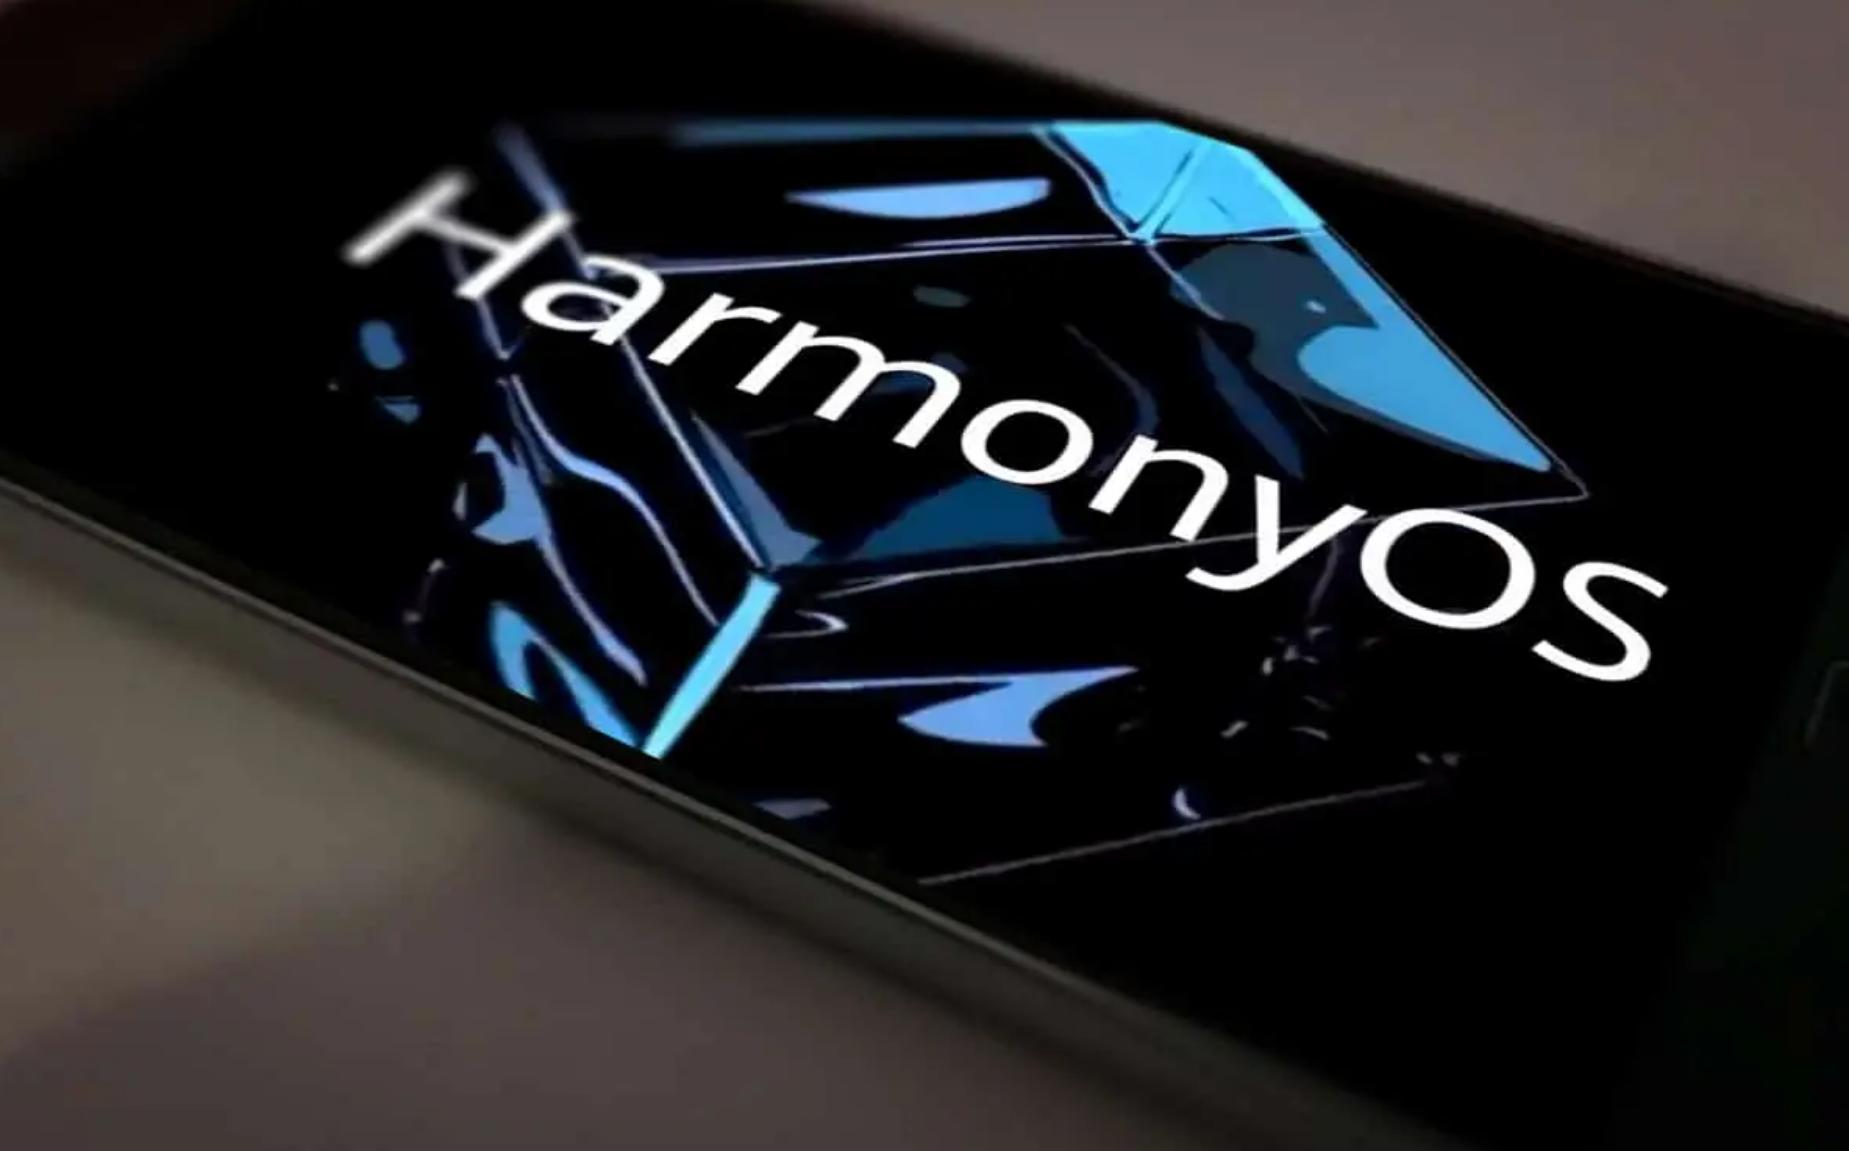 Huawei prevede il lancio globale di HarmonyOS nel 2022